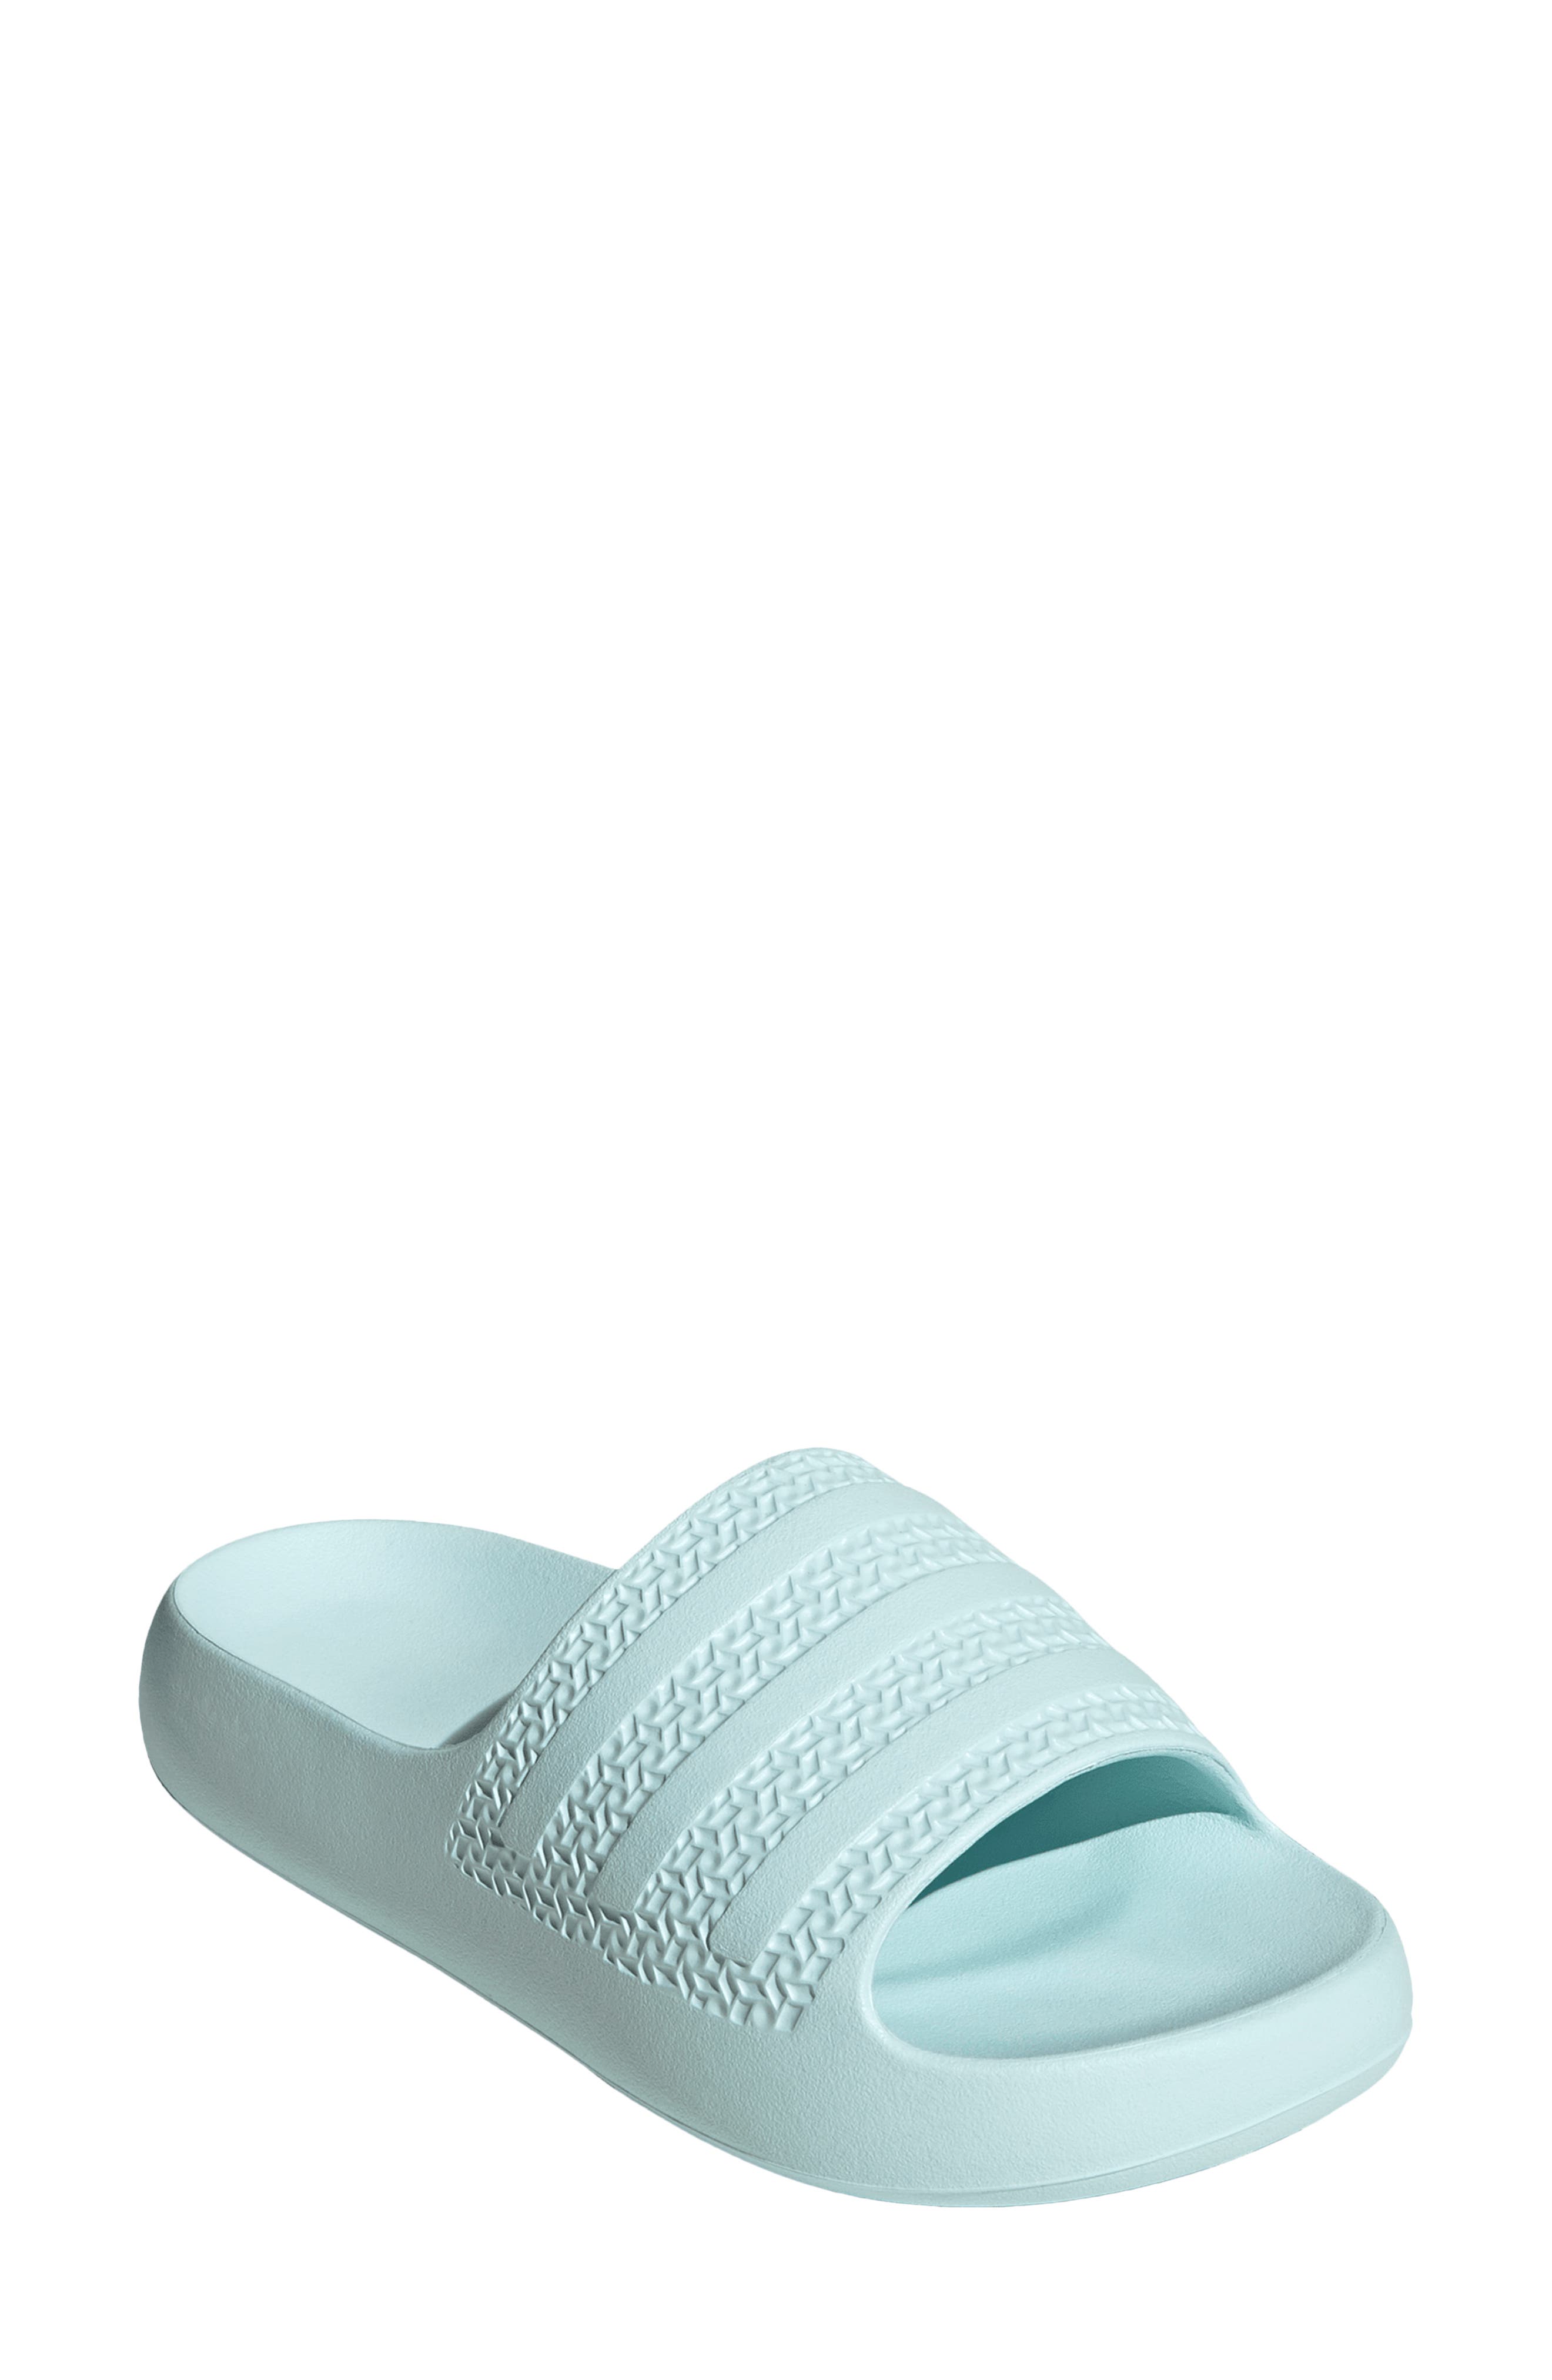 light blue slide sandals